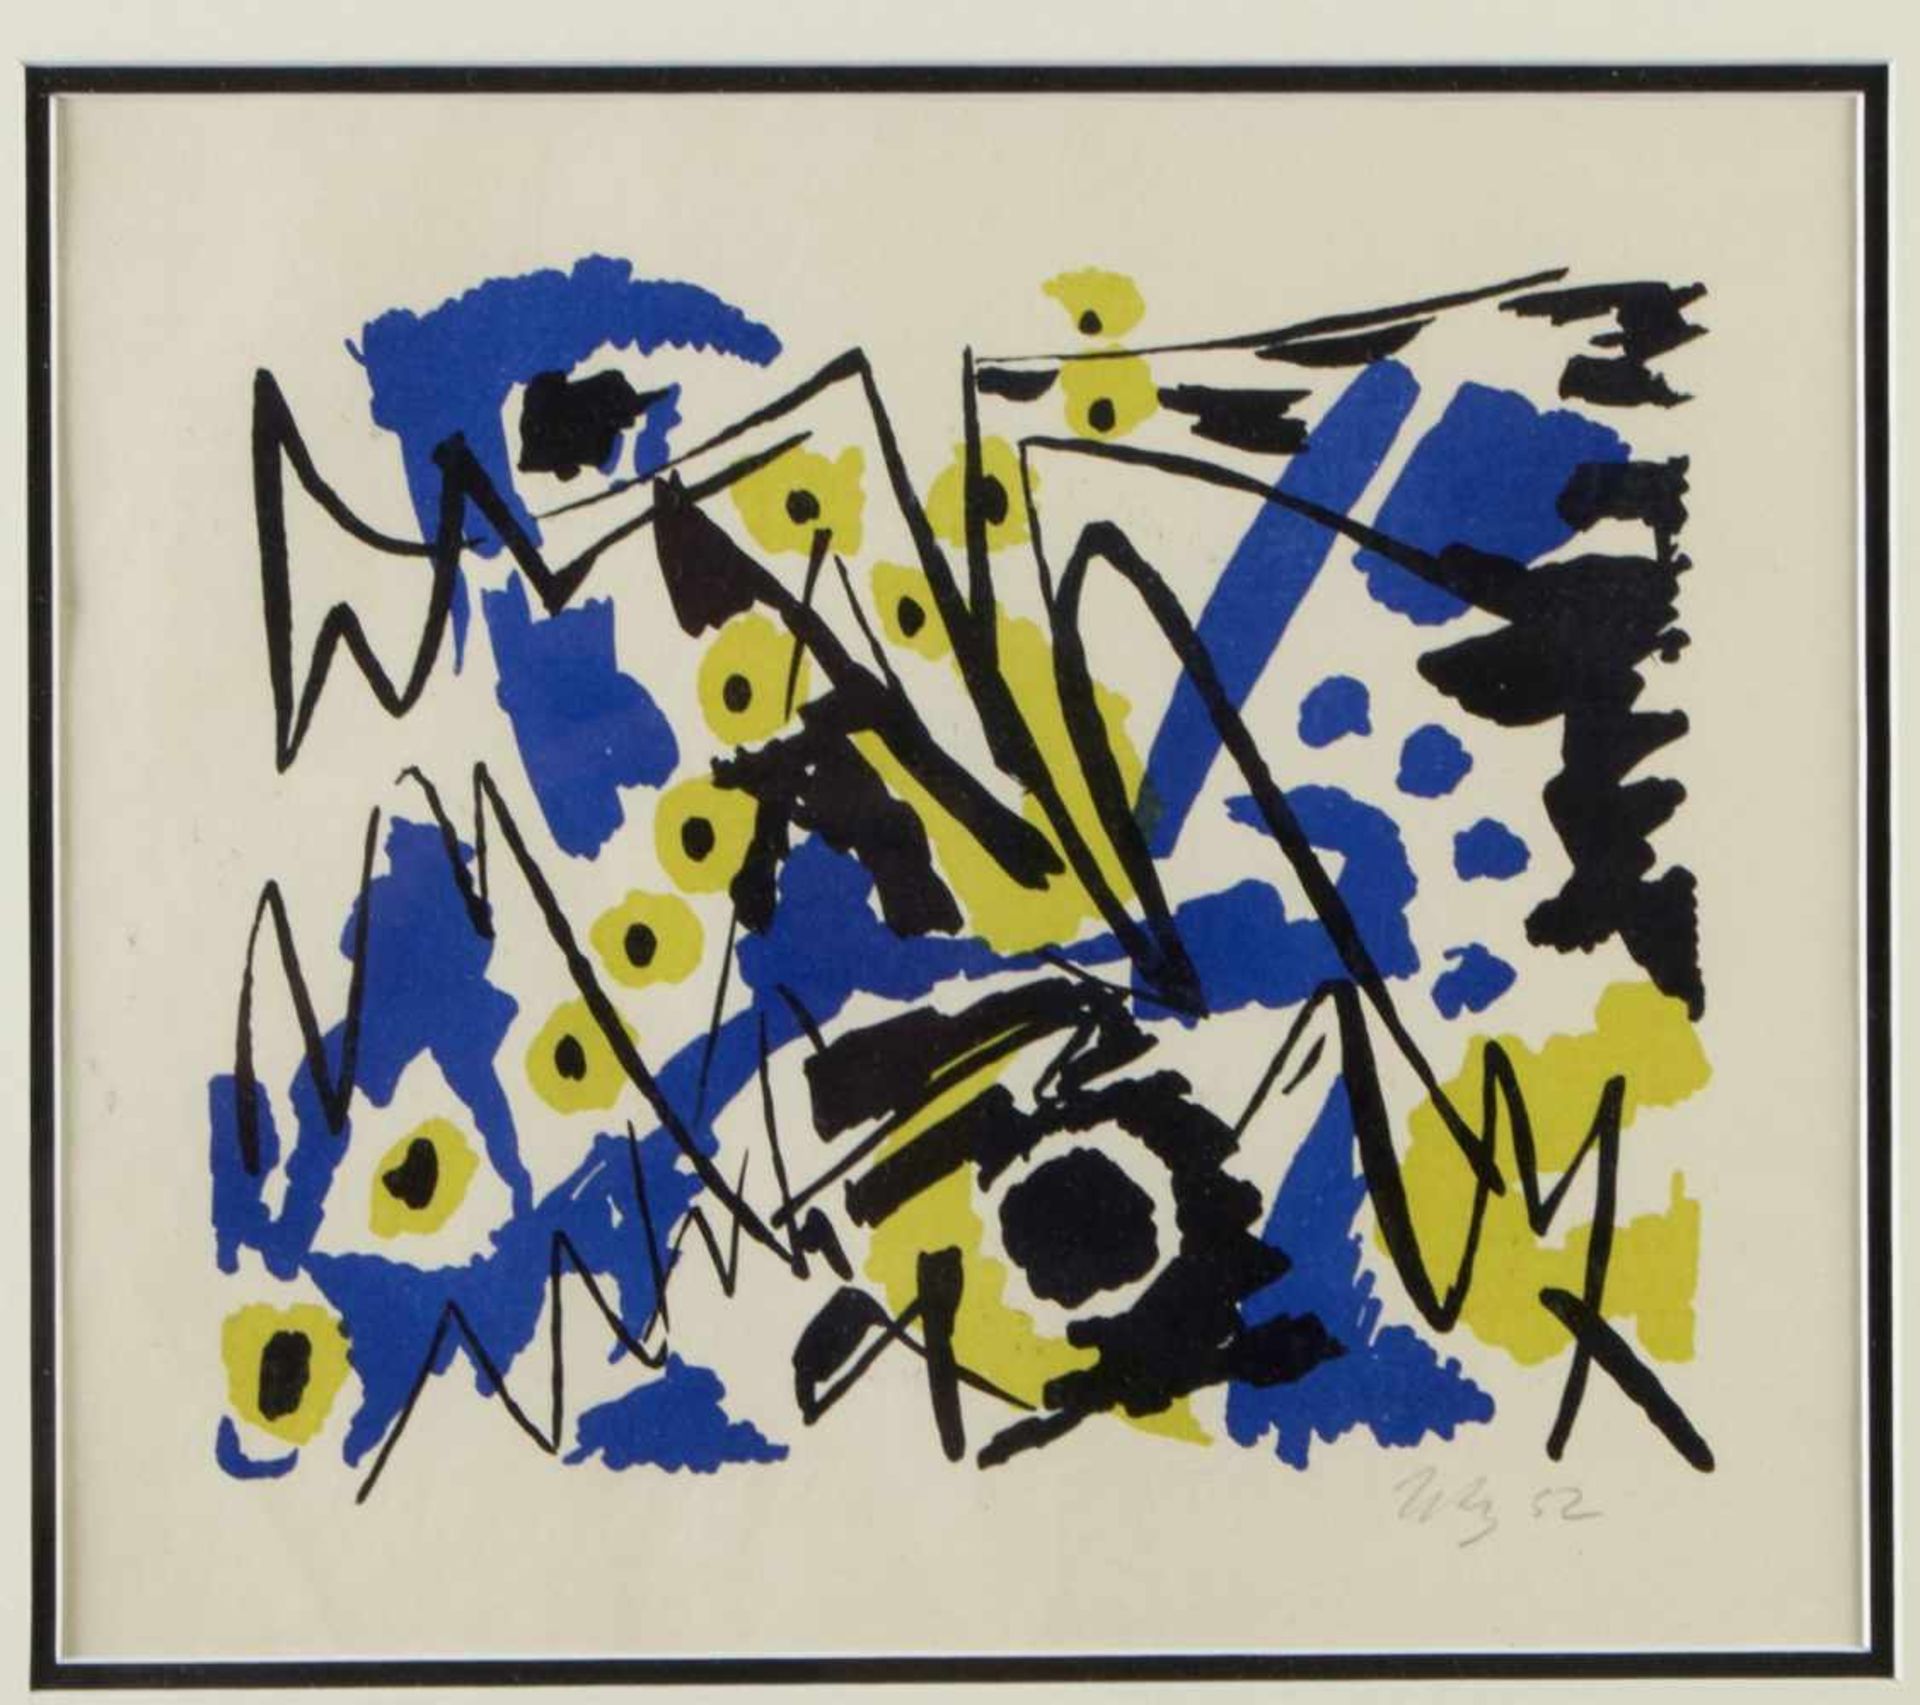 Nay, Ernst Wilhelm. 1902 Berlin - Köln 1968Ohne Titel. Farblithographie. Sign. und dat. (19)52. 20 x